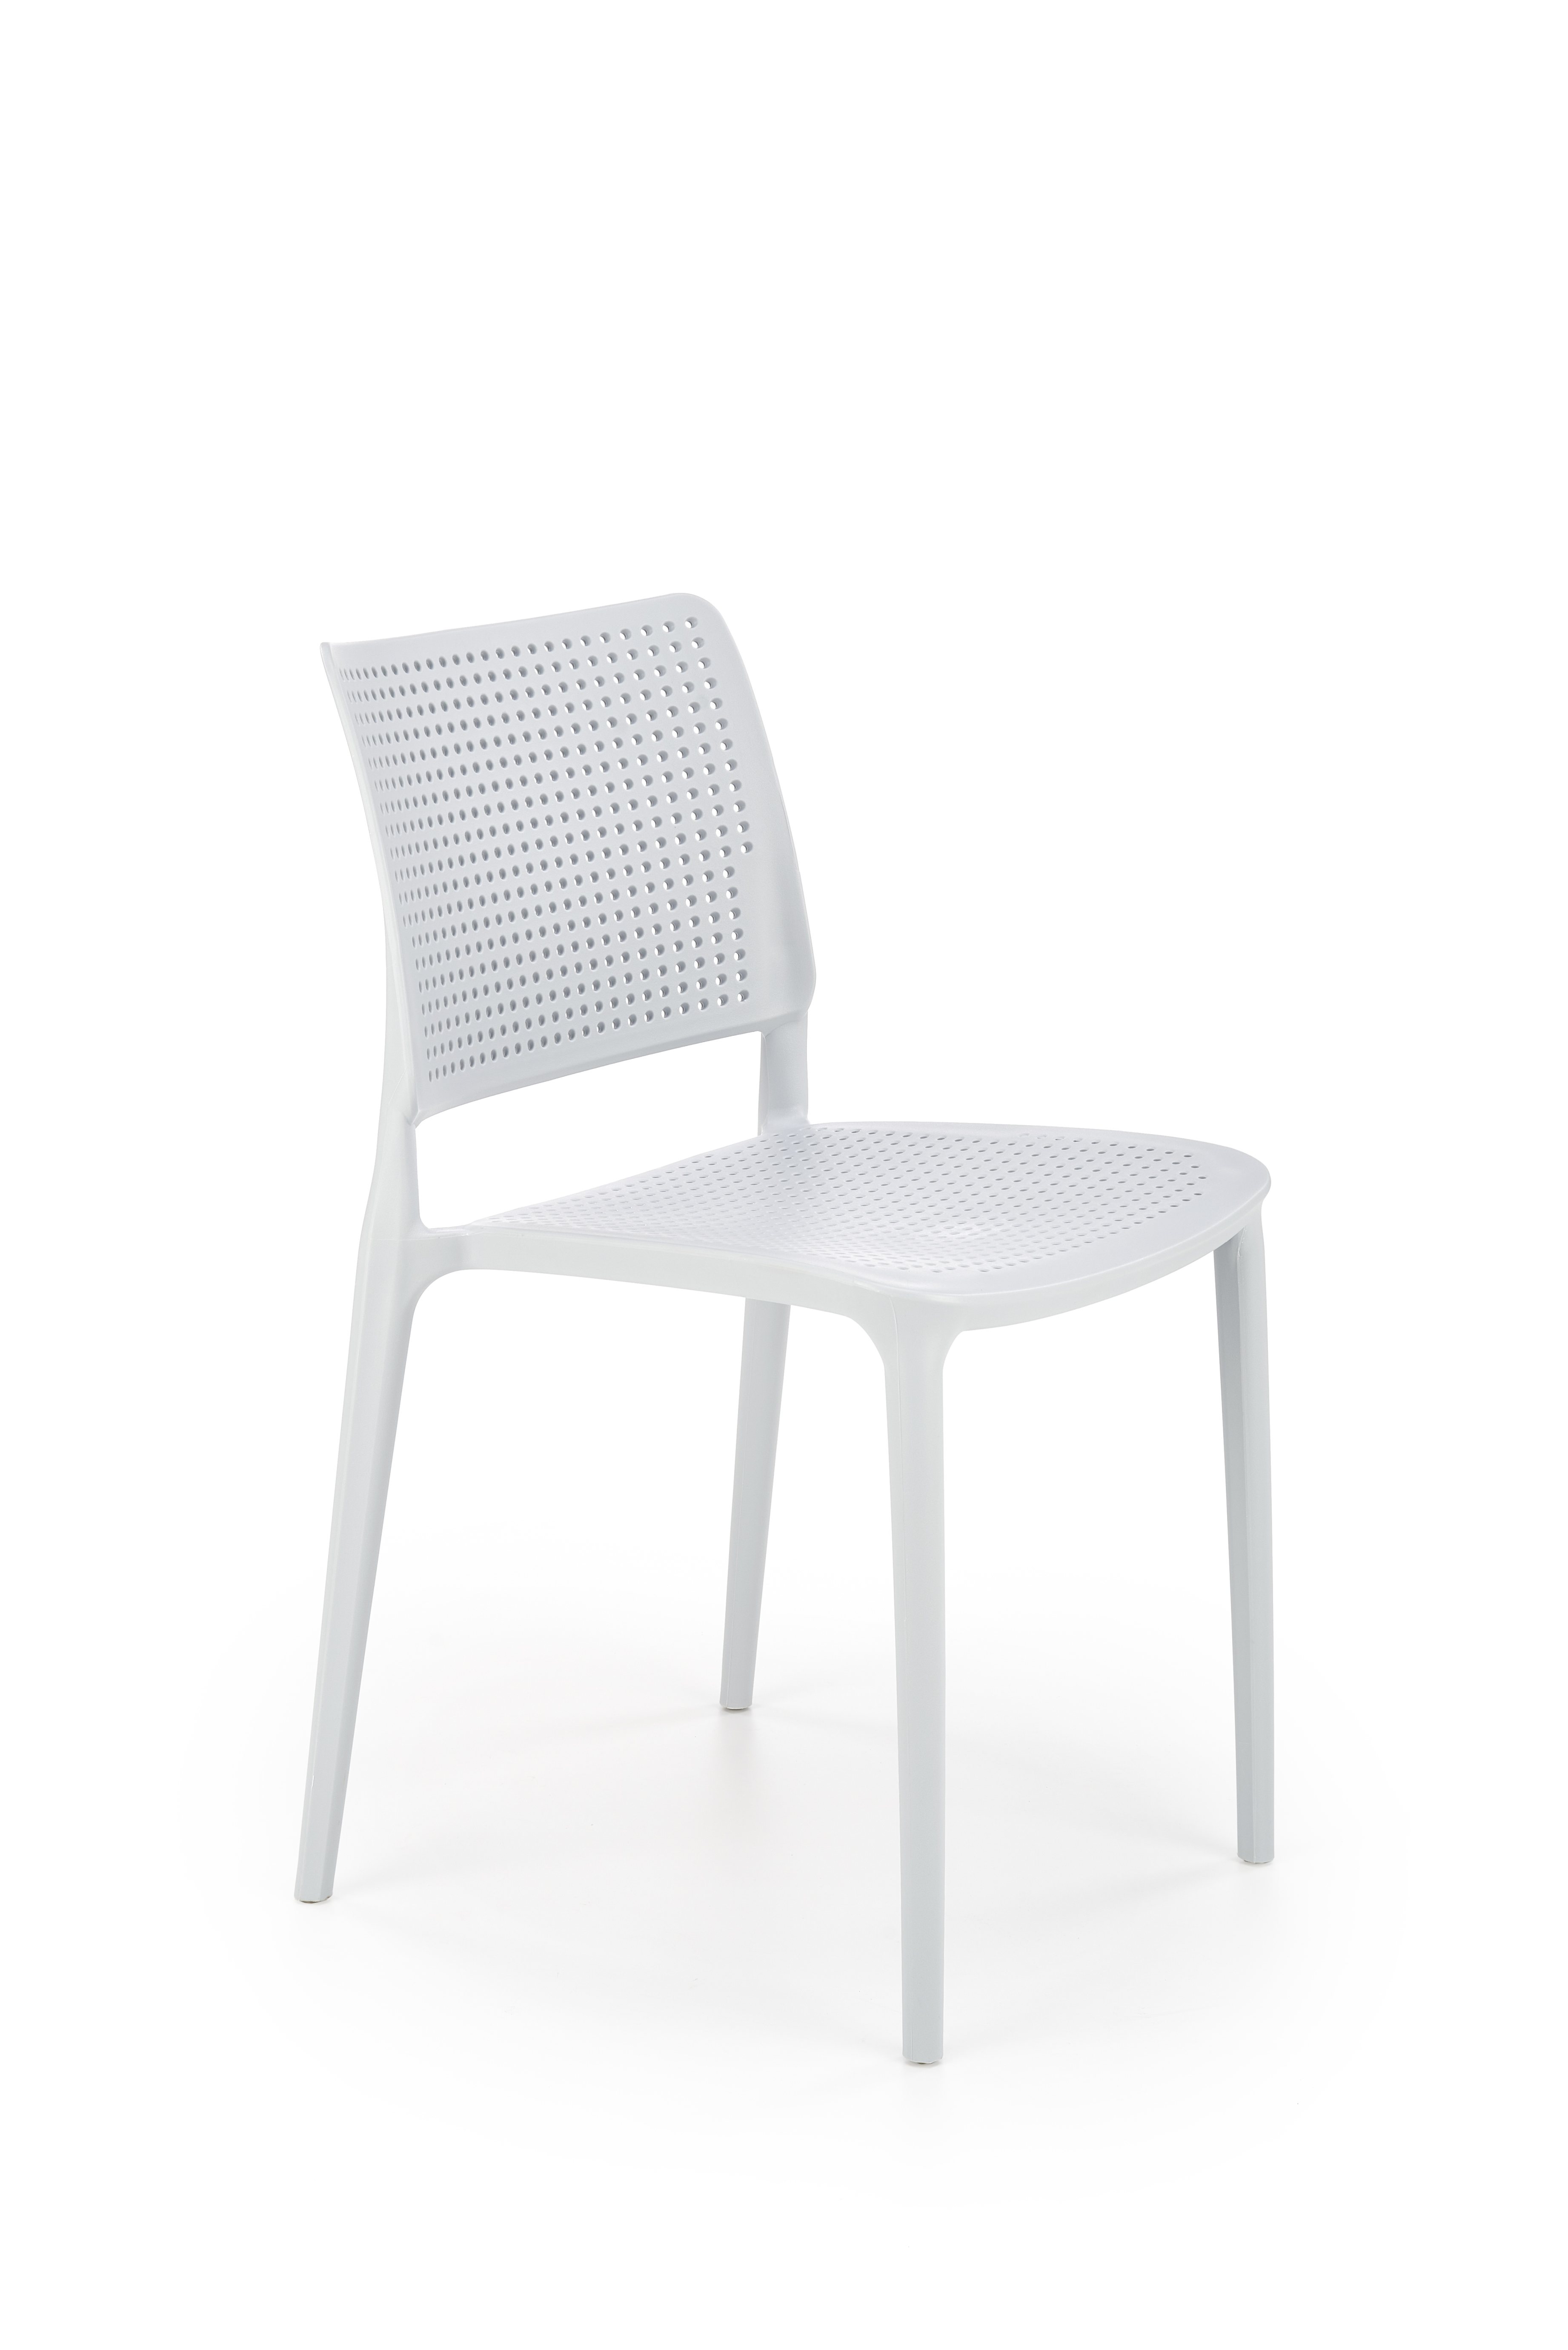 K514 Židle jasný Modrý (1p=4szt) k514 Židle jasný Modrý (1p=4szt)